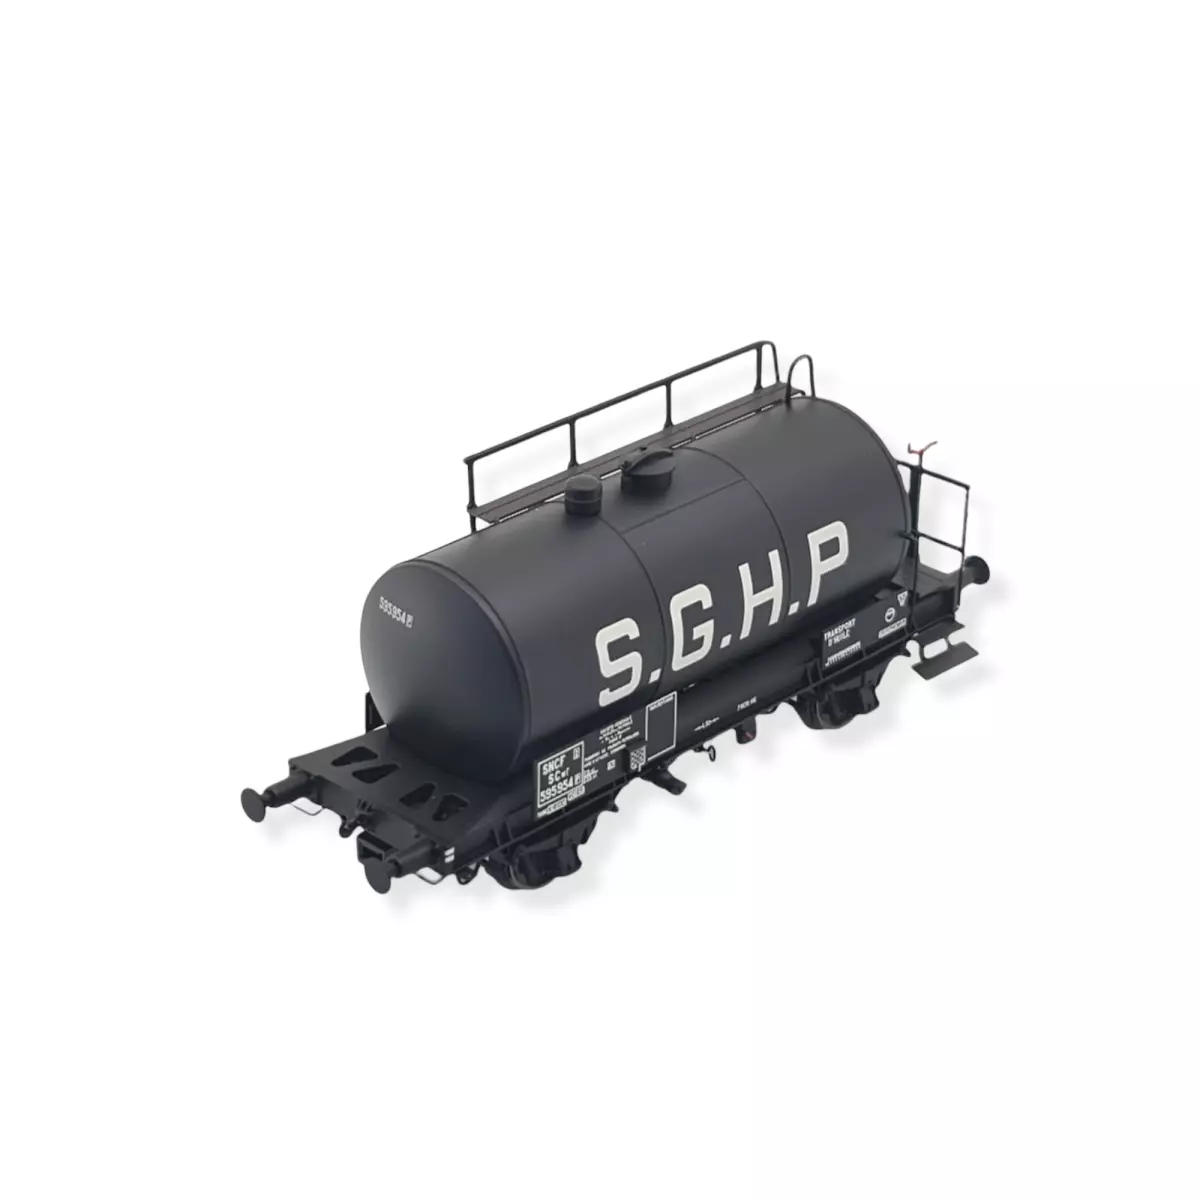 Wagon citerne Uedinger "S.G.H.P." Noir 24m3 EXACT TRAIN 20598 - SNCF - HO 1/87